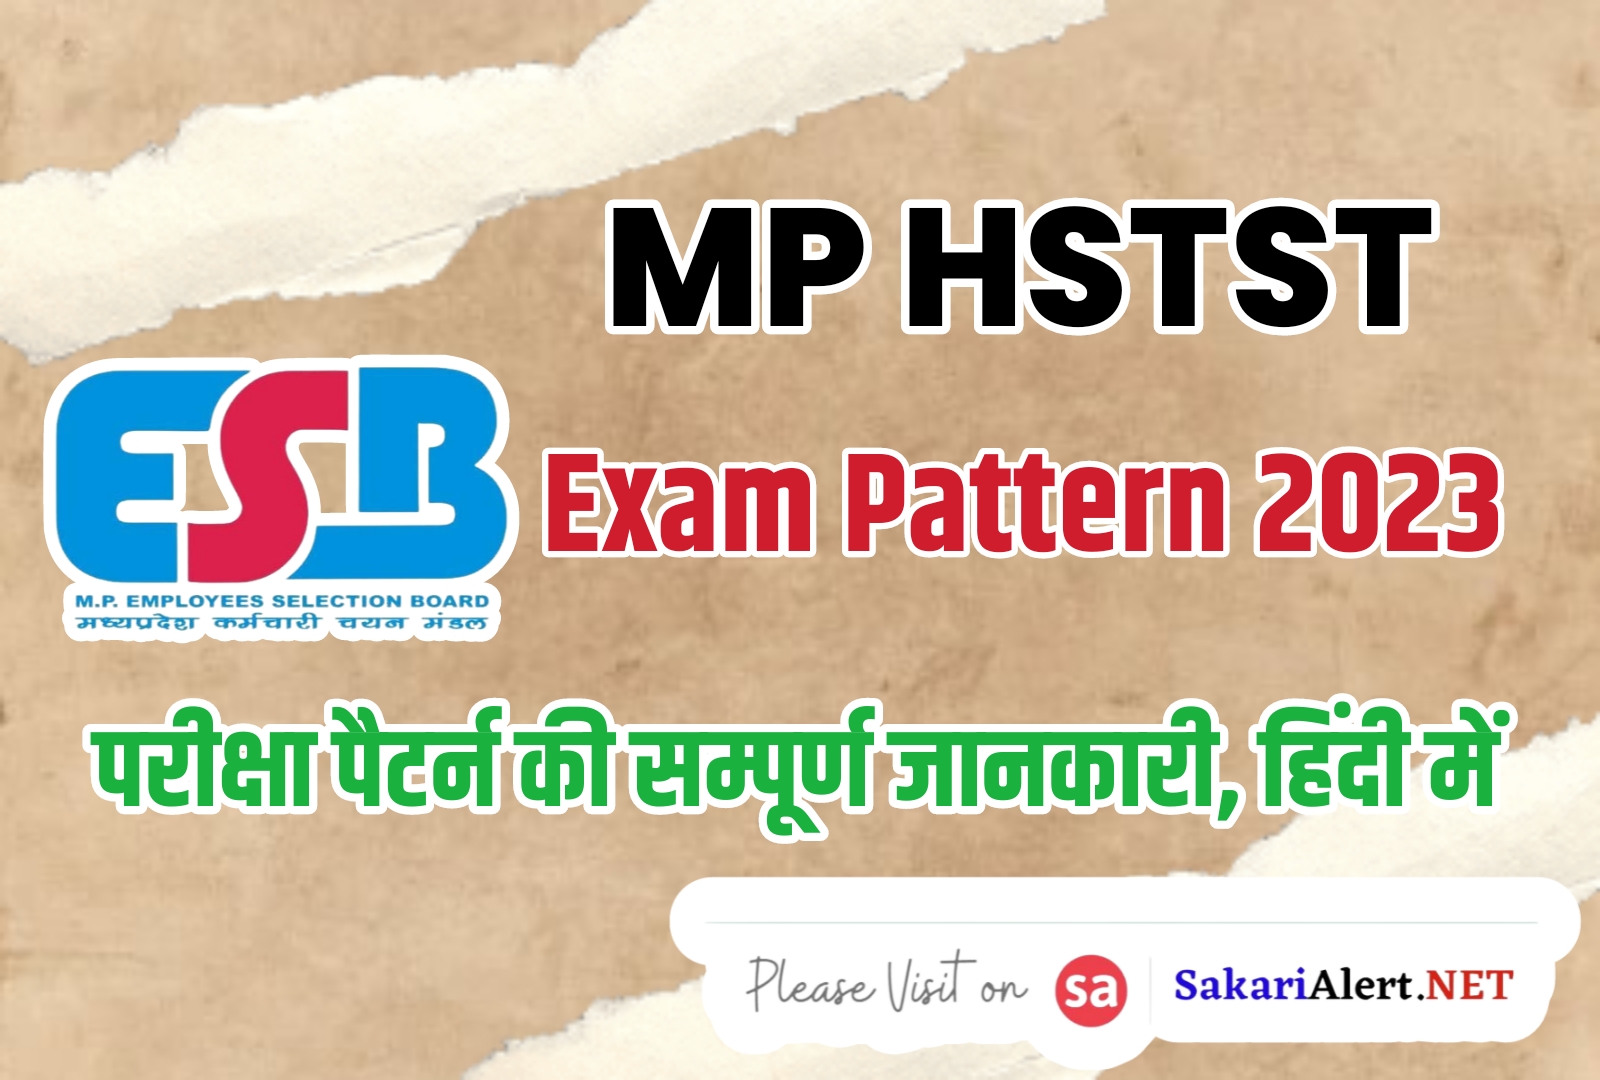 MP HSTST Exam Pattern 2023